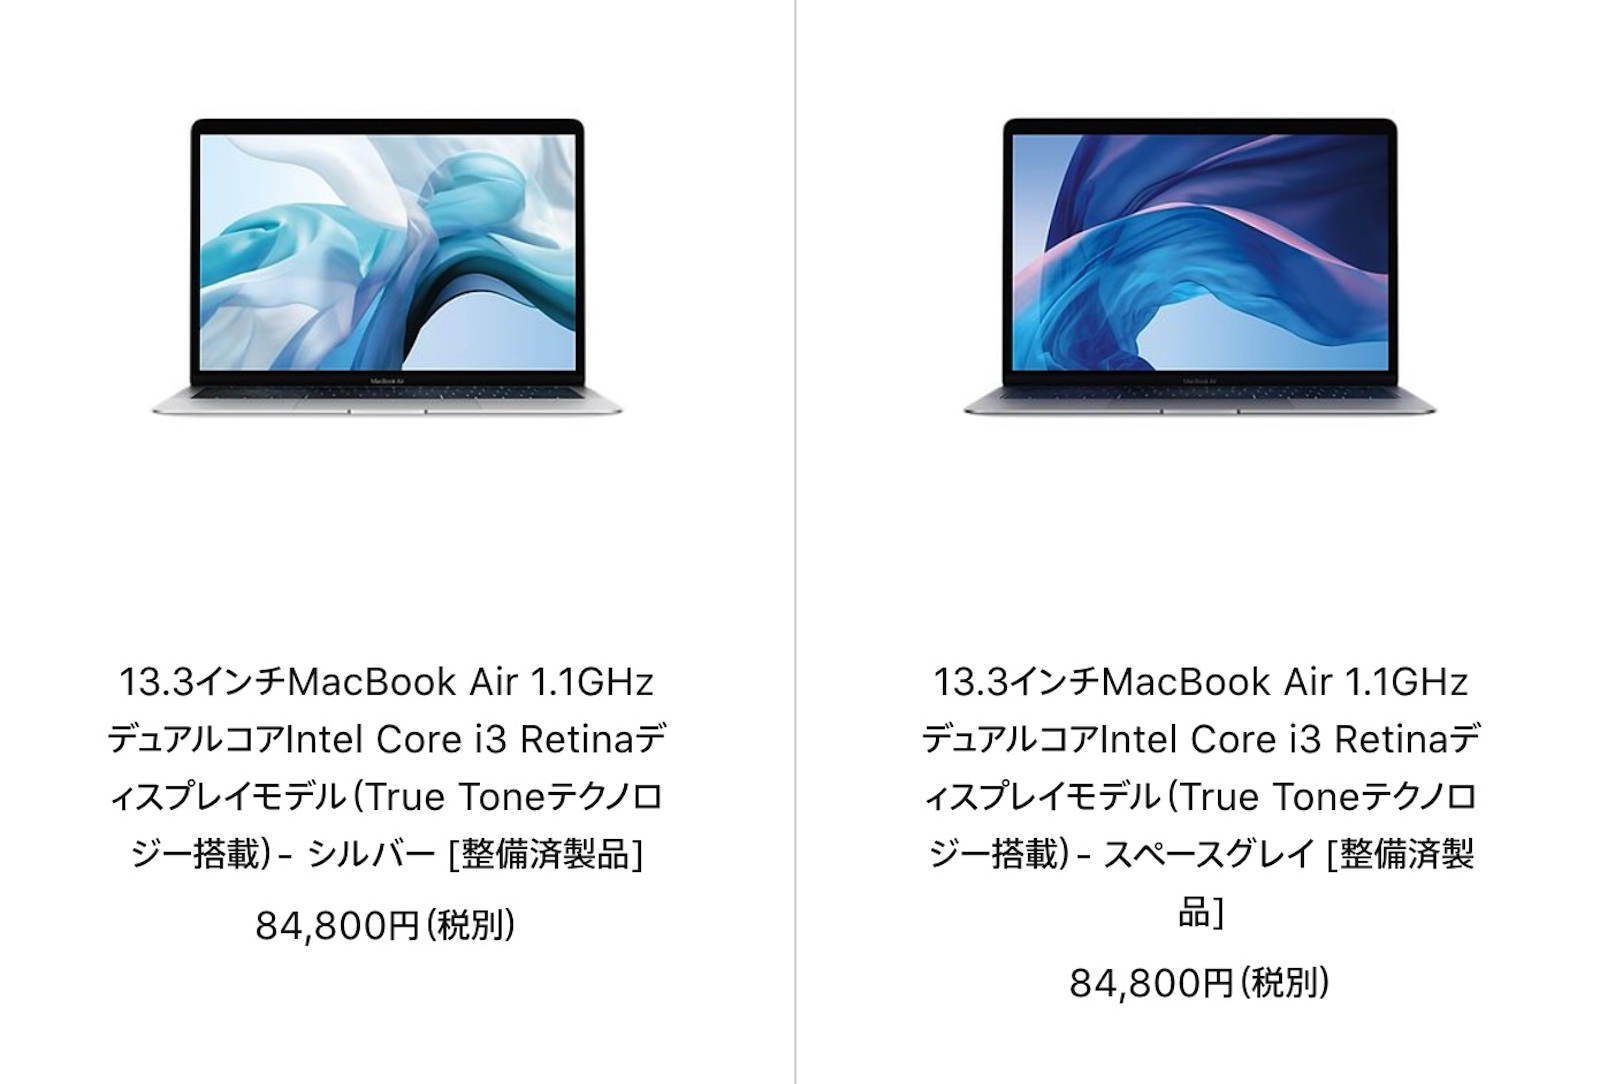 macbook-air-refurbished-models-20210222.jpg